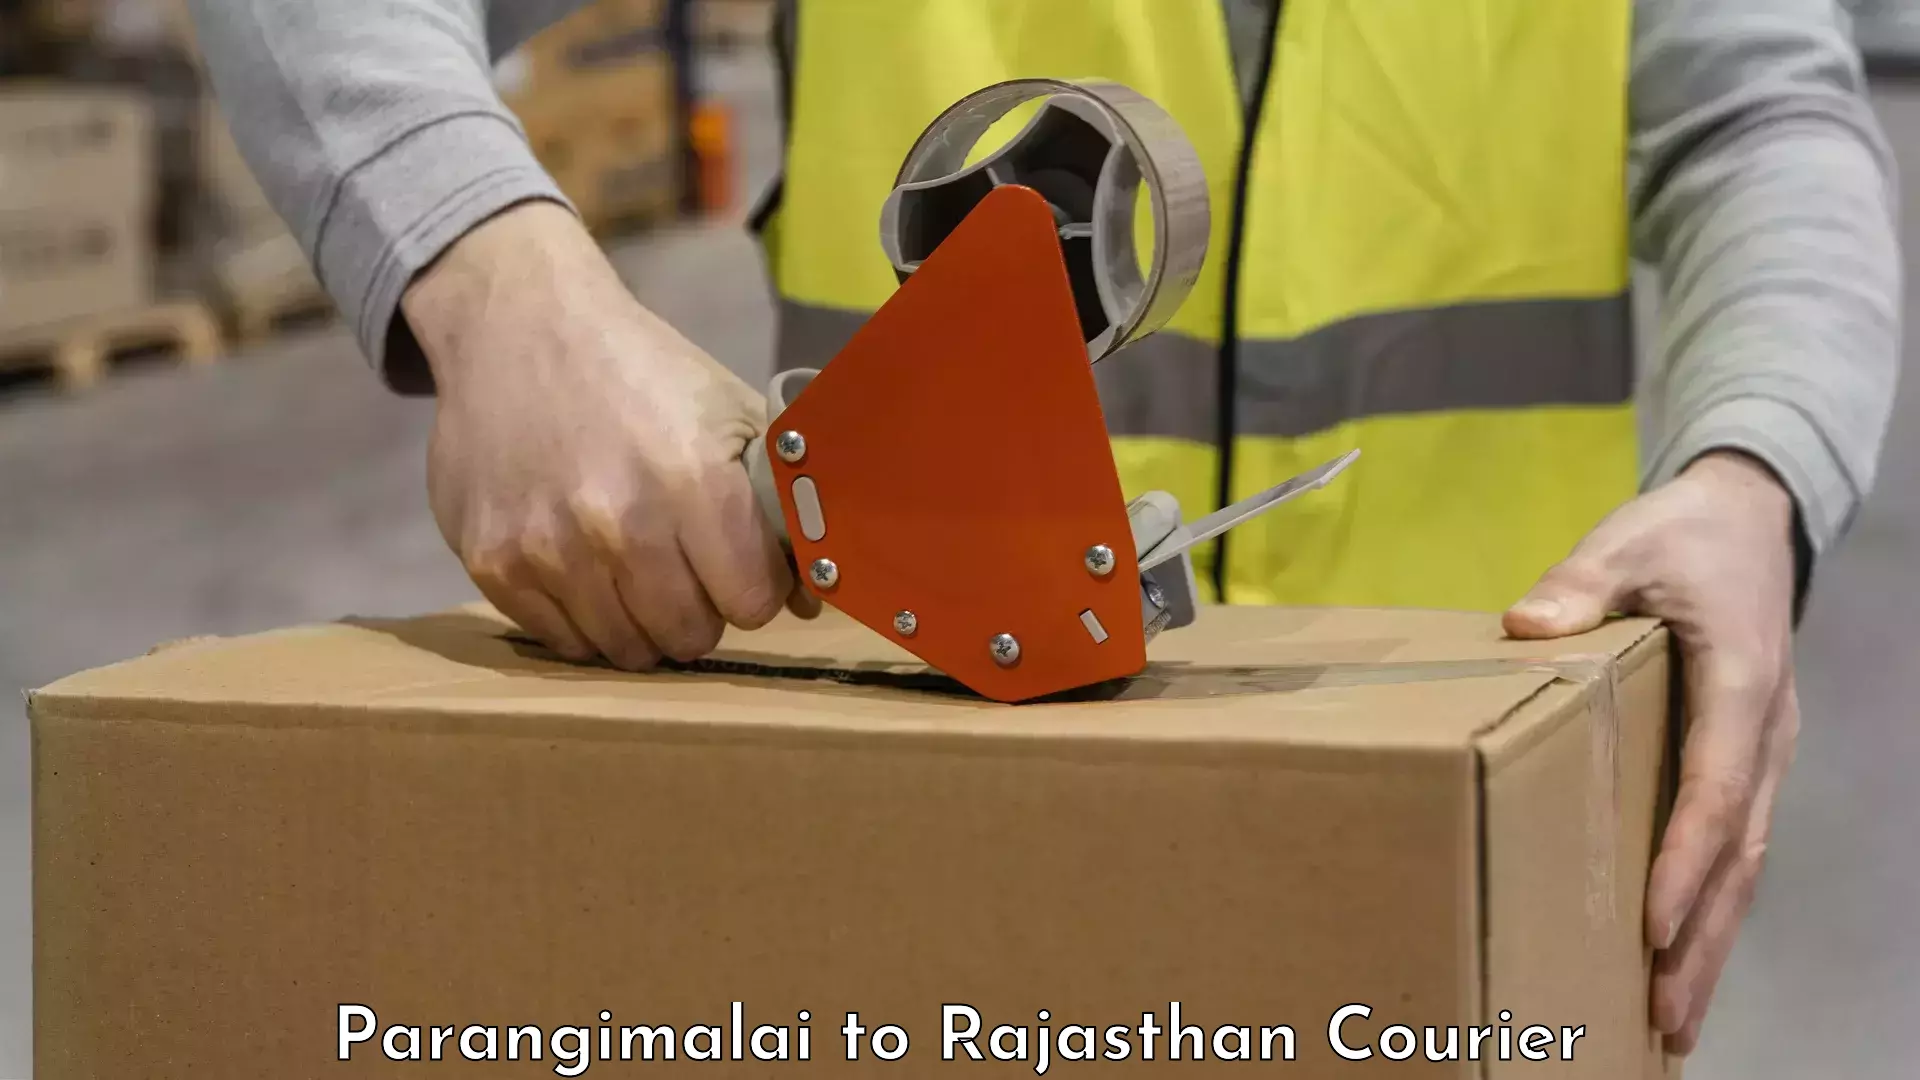 Baggage handling services in Parangimalai to Rajasthan